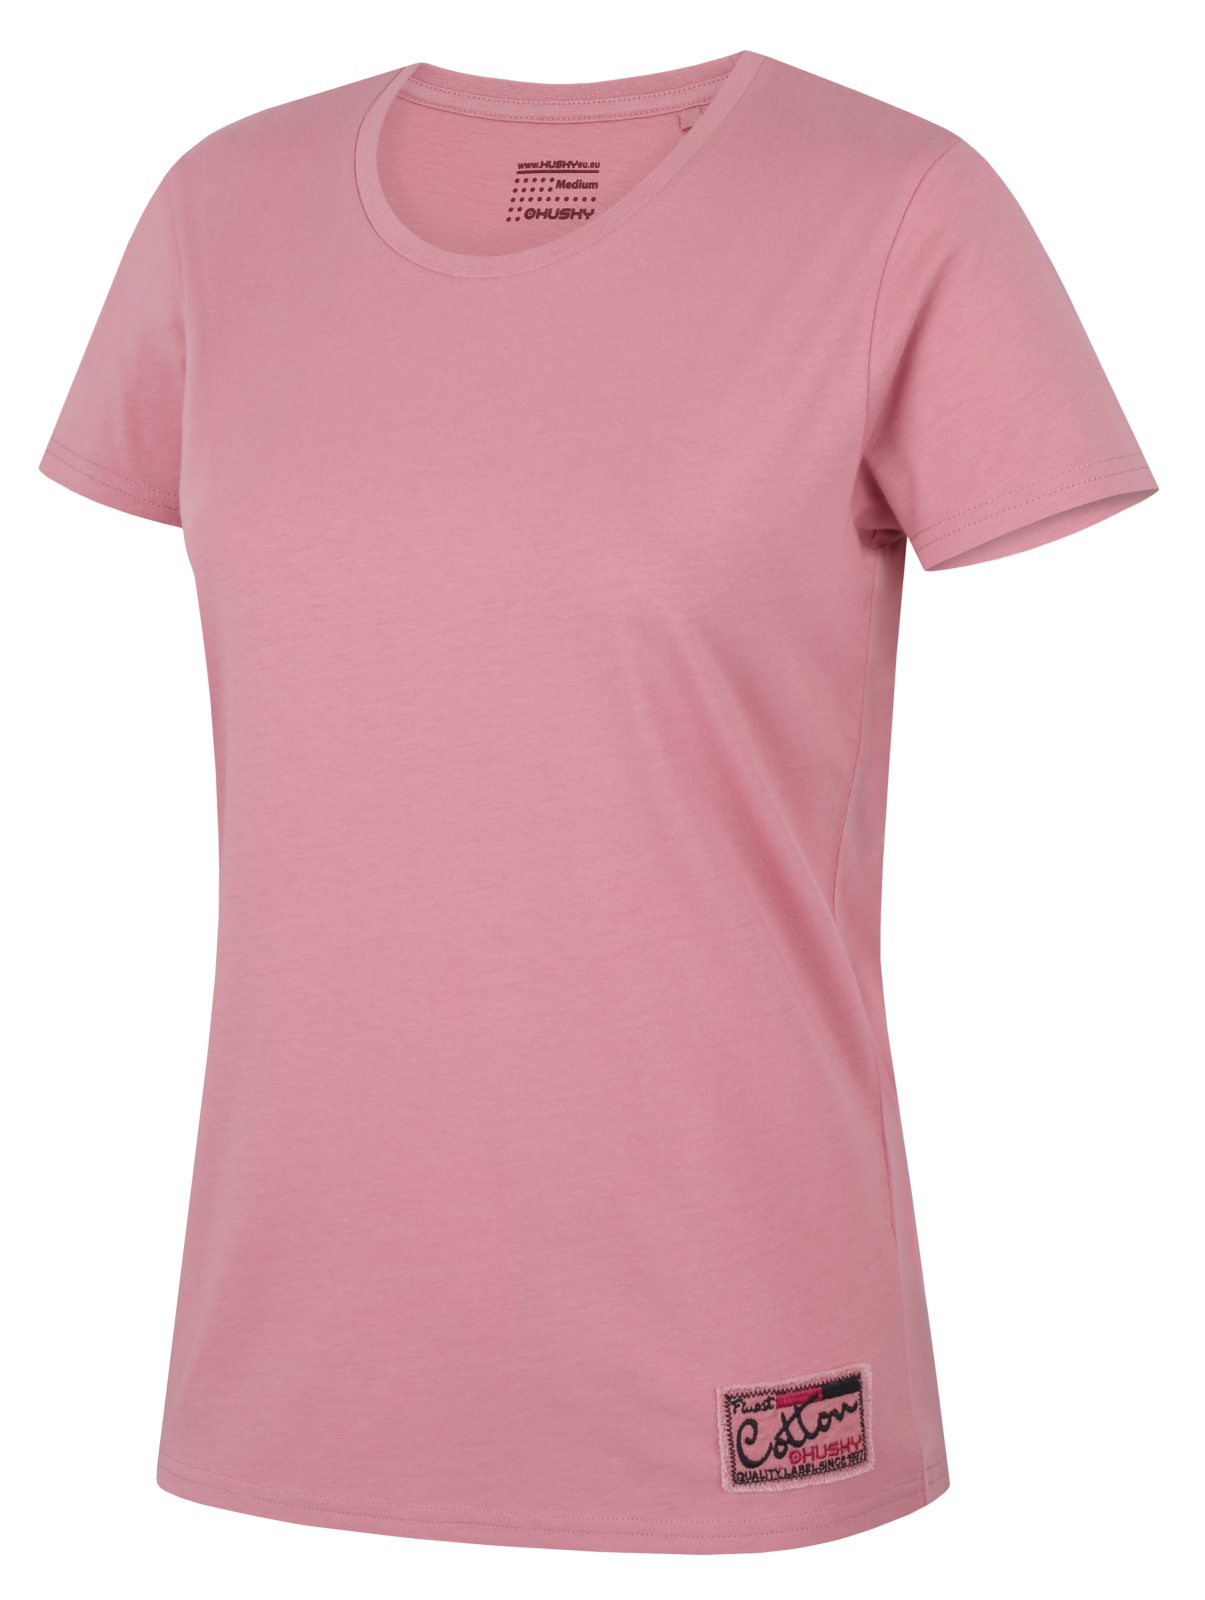 Husky Dámské bavlněné triko Tee Base L pink Velikost: XXL dámské tričko s krátkým rukávem